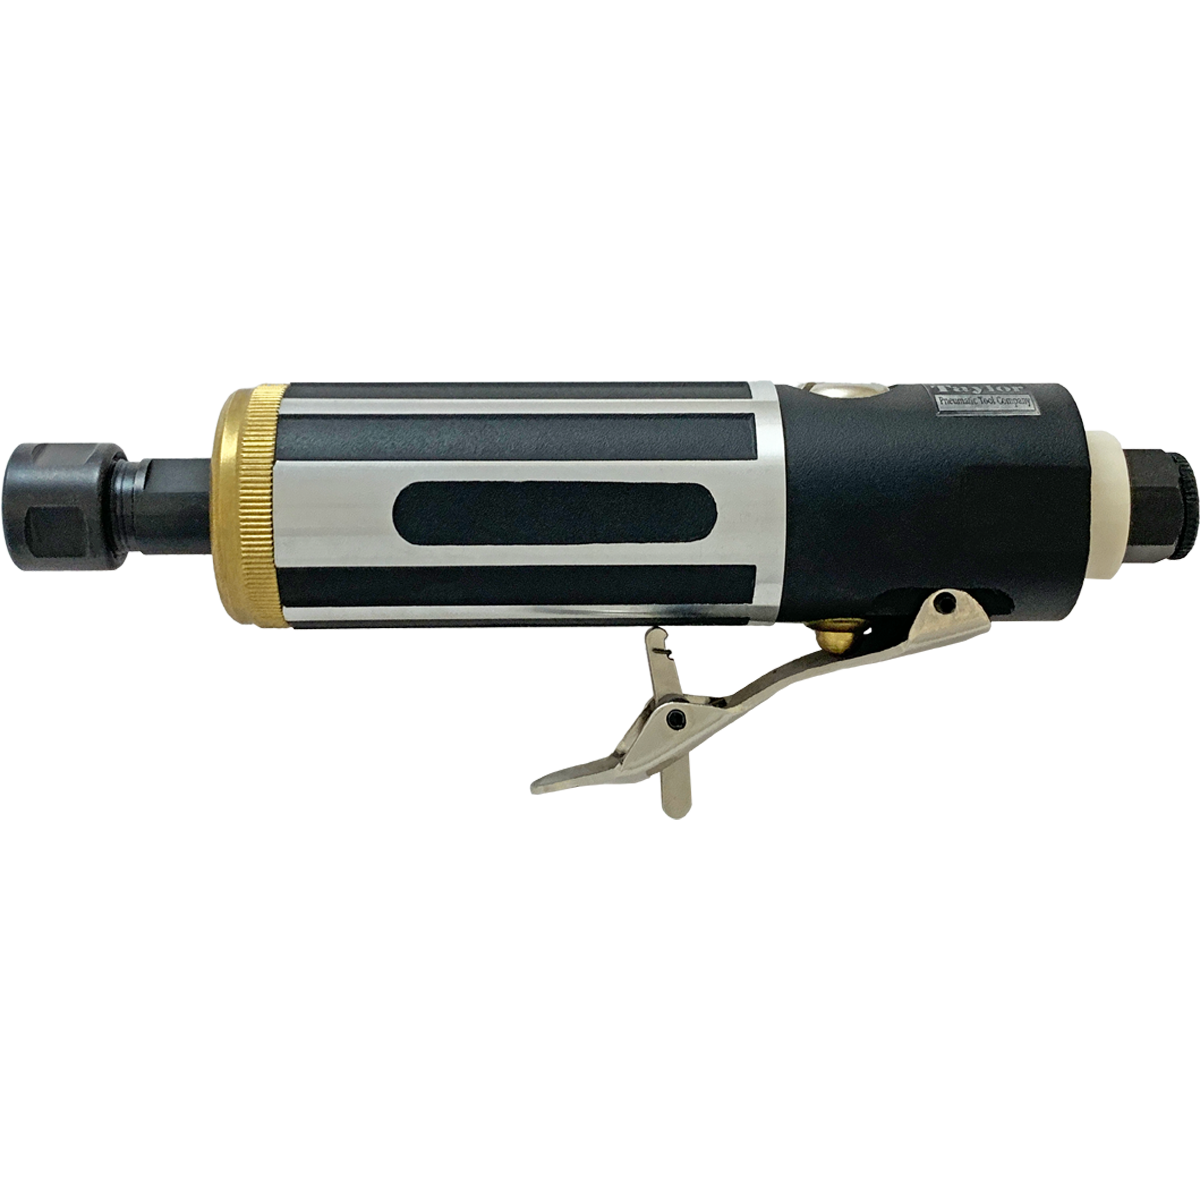 6mm Heavy Duty Pneumatic Die Grinder, Air Pressure: 50-100 psi at